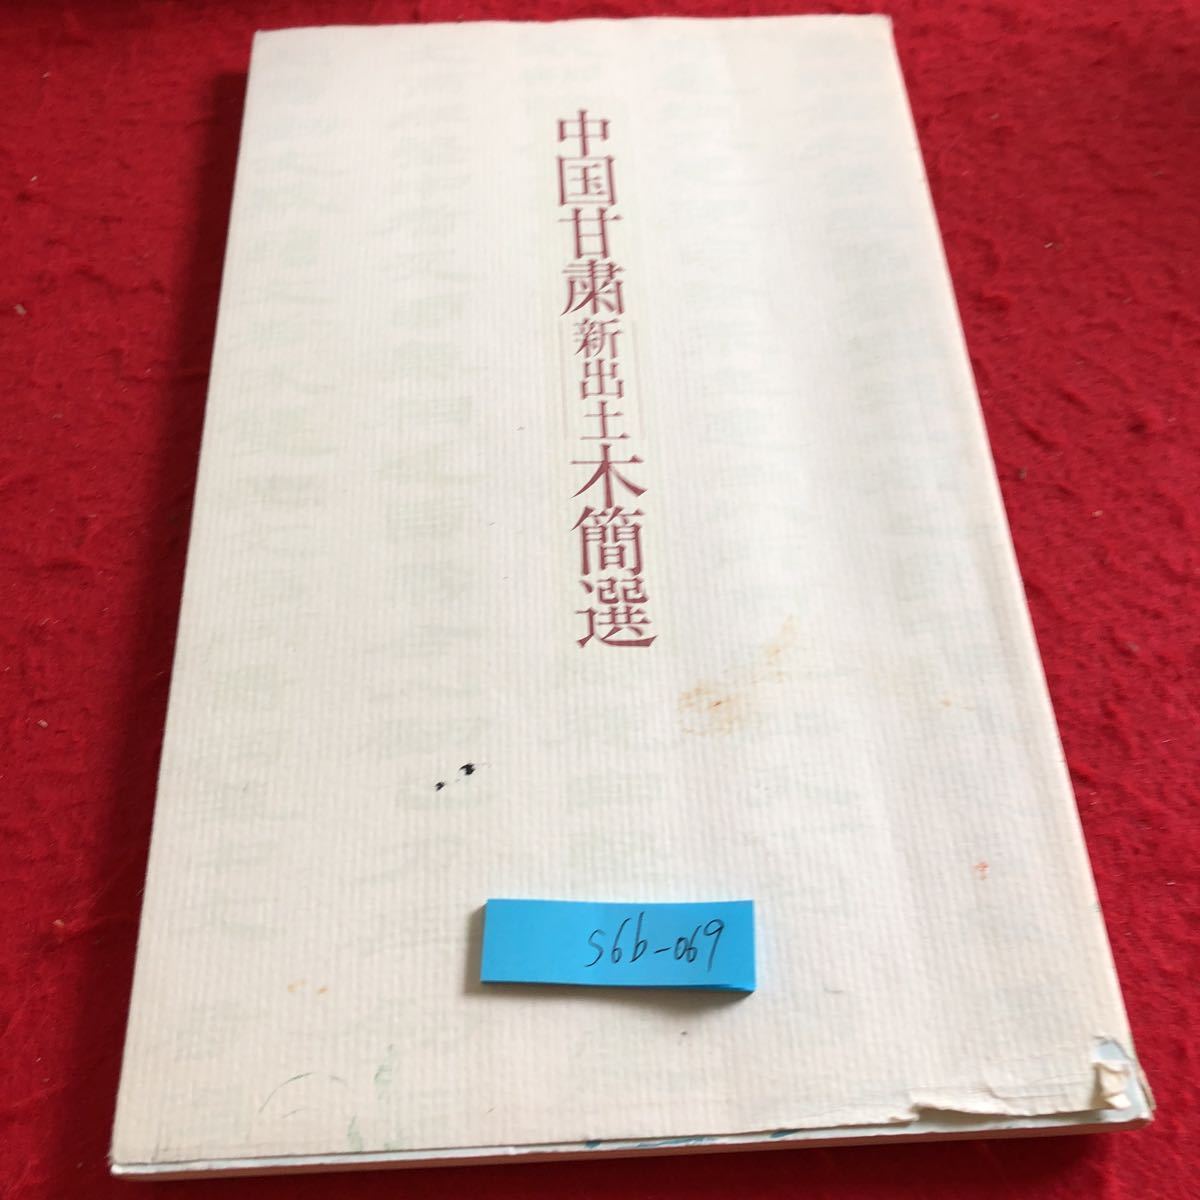 S6b-069 गांसु में हाल ही में उत्खनित लकड़ी की पट्टियों का चयन, चीन. विषय-वस्तु अज्ञात. मैनिची समाचारपत्र, 1995. इतिहास, सिल्क रोड, प्रशंसा, नकल, सचित्र सूची, डुनहुआंग लकड़ी की गोलियाँ, ली सी, युमेन फूल सागर से उत्खनन किया गया, वगैरह।, चित्रकारी, कला पुस्तक, संग्रह, सूची